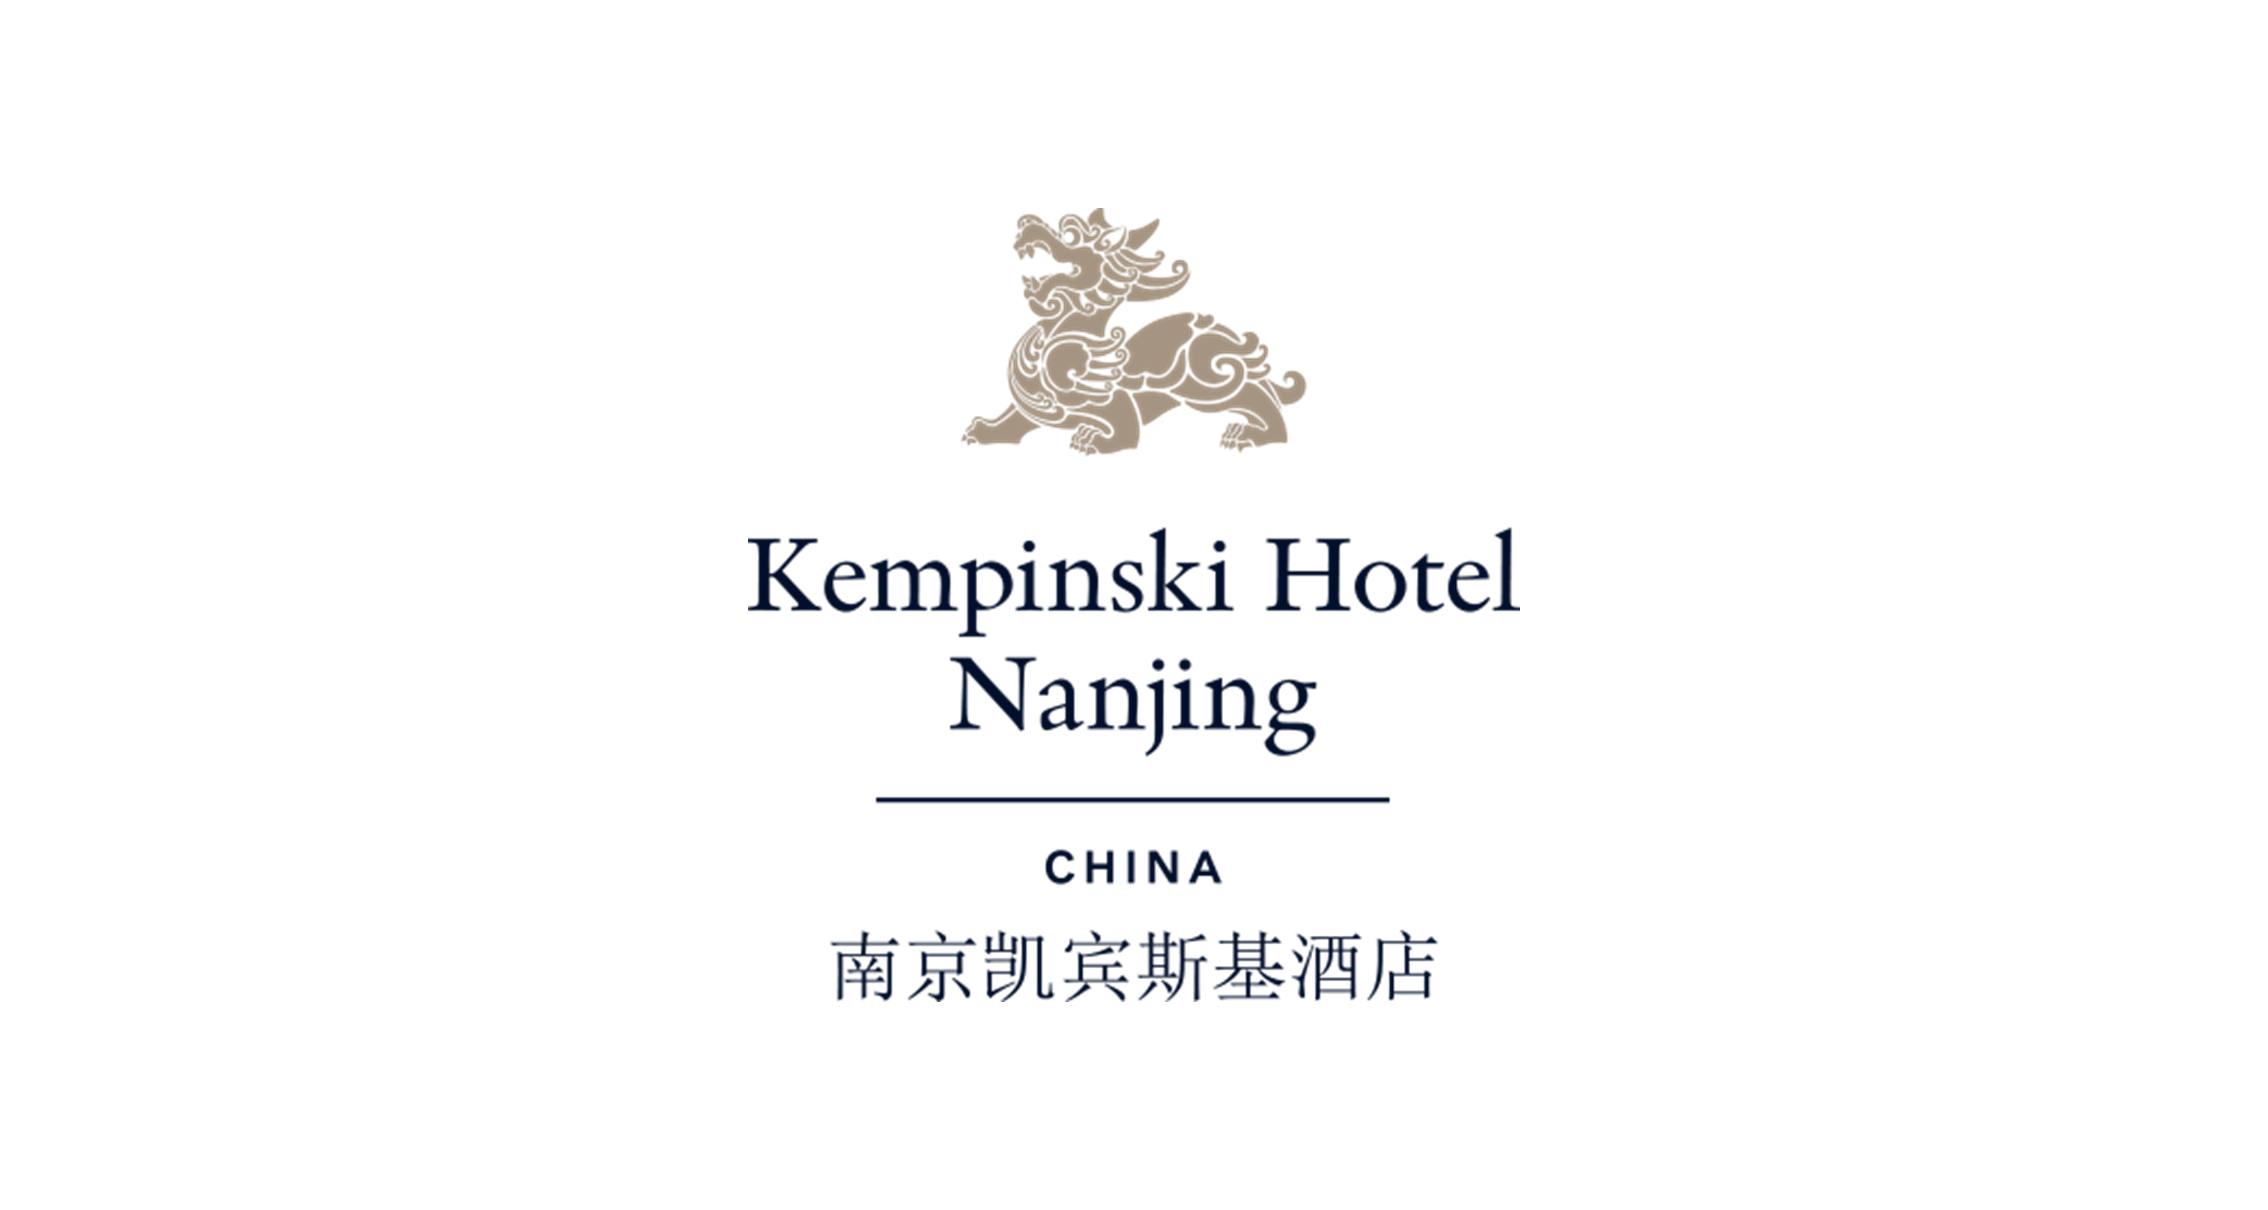 南京凯宾斯基大酒店 Kempinsi Hotel Nanjing